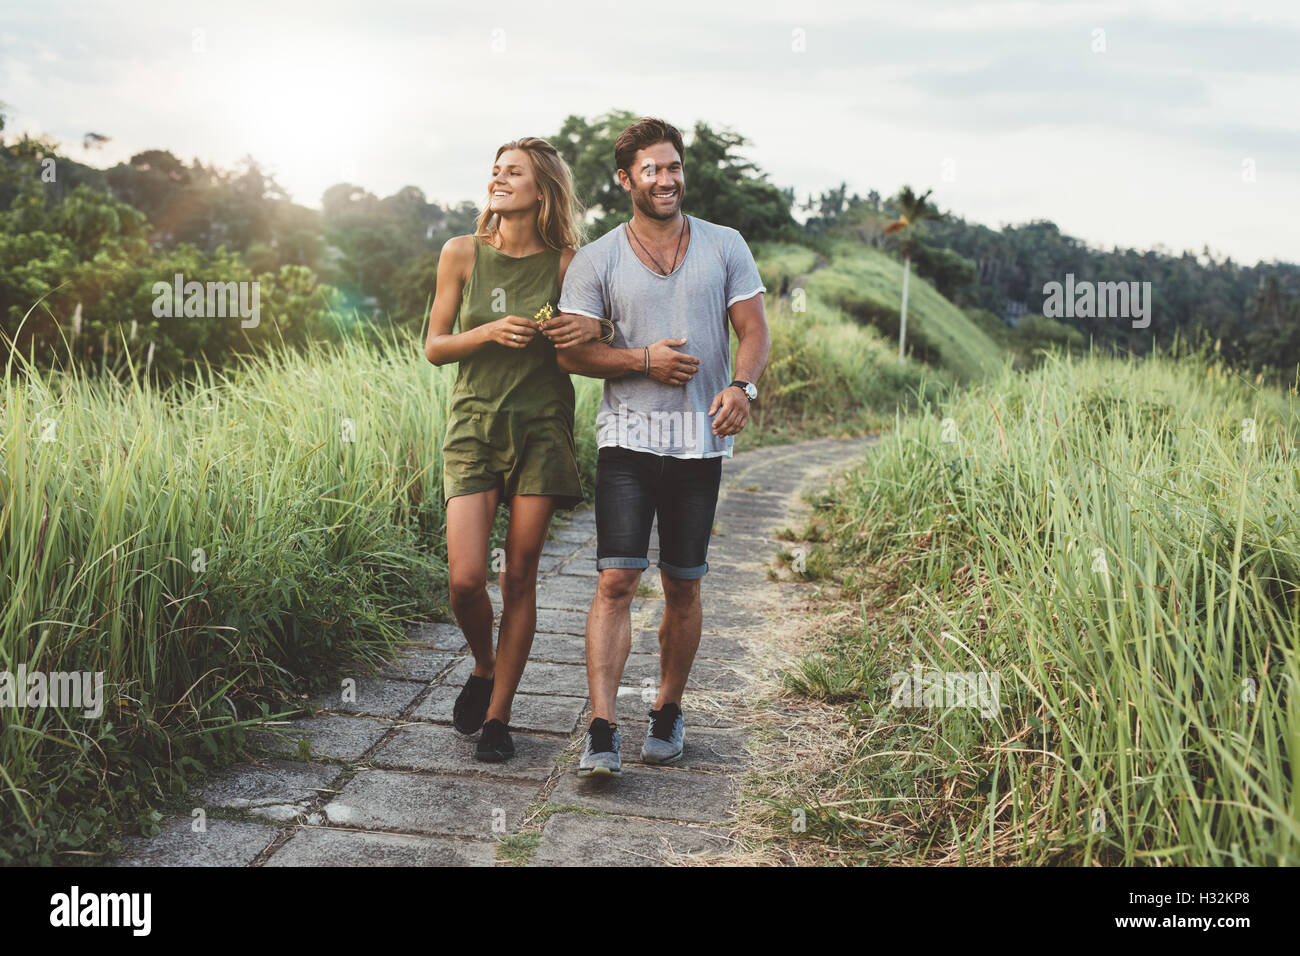 Piscine shot of young couple in love marche sur chemin par grass field. L'homme et de la femme marchant le long tall grass field. Banque D'Images